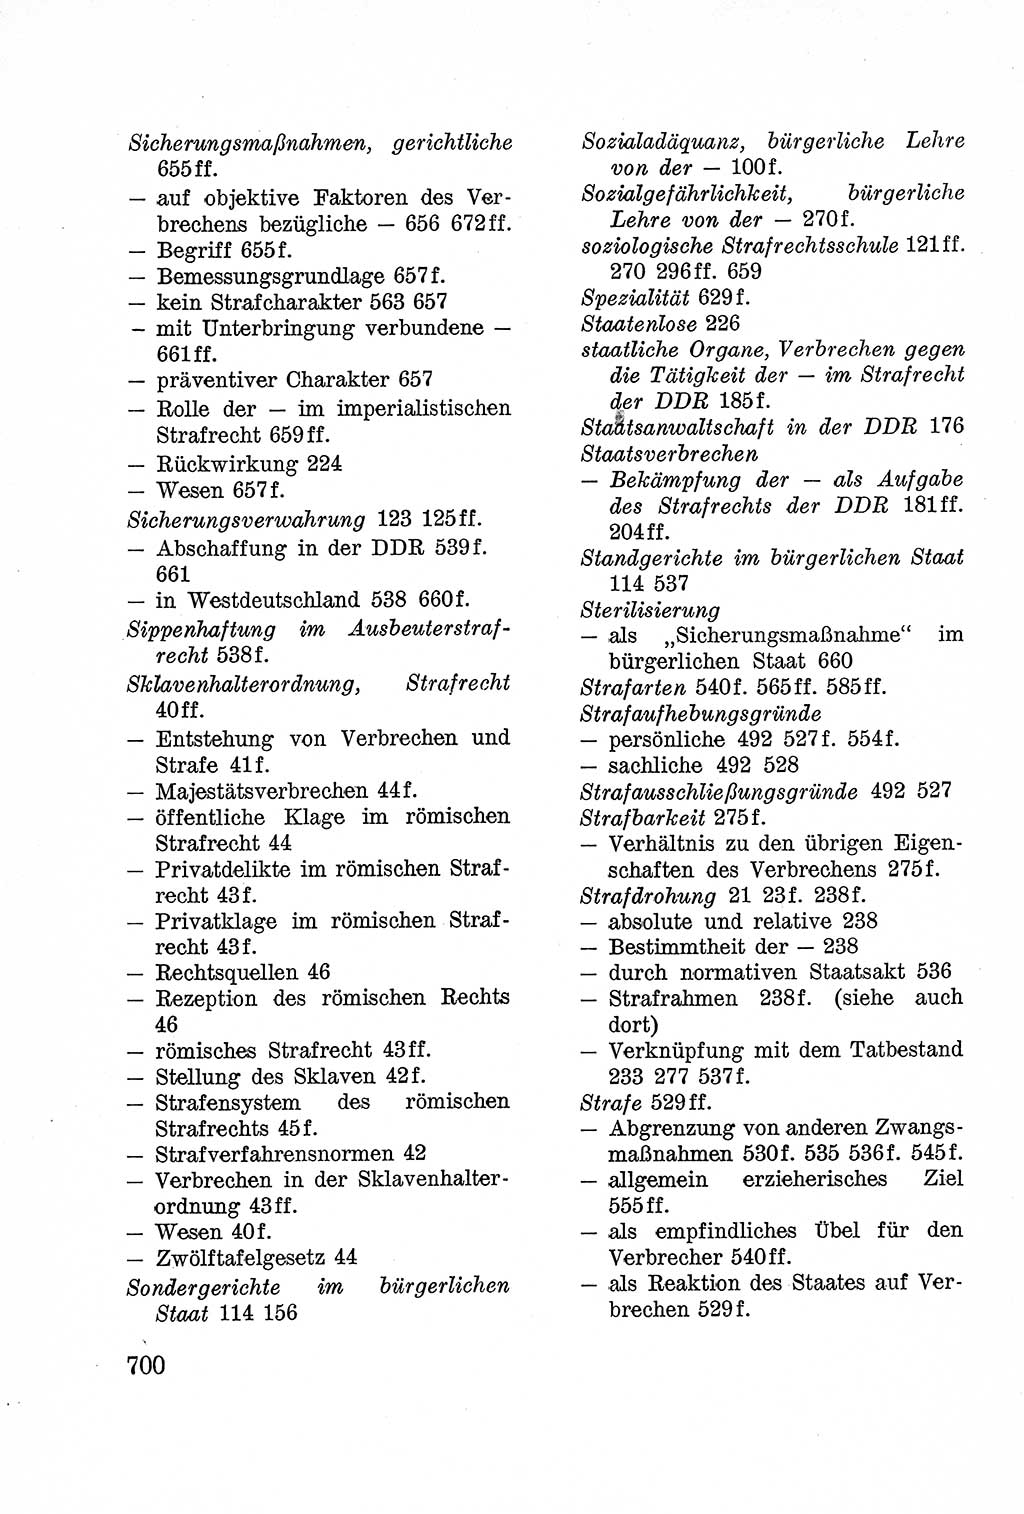 Lehrbuch des Strafrechts der Deutschen Demokratischen Republik (DDR), Allgemeiner Teil 1957, Seite 700 (Lb. Strafr. DDR AT 1957, S. 700)